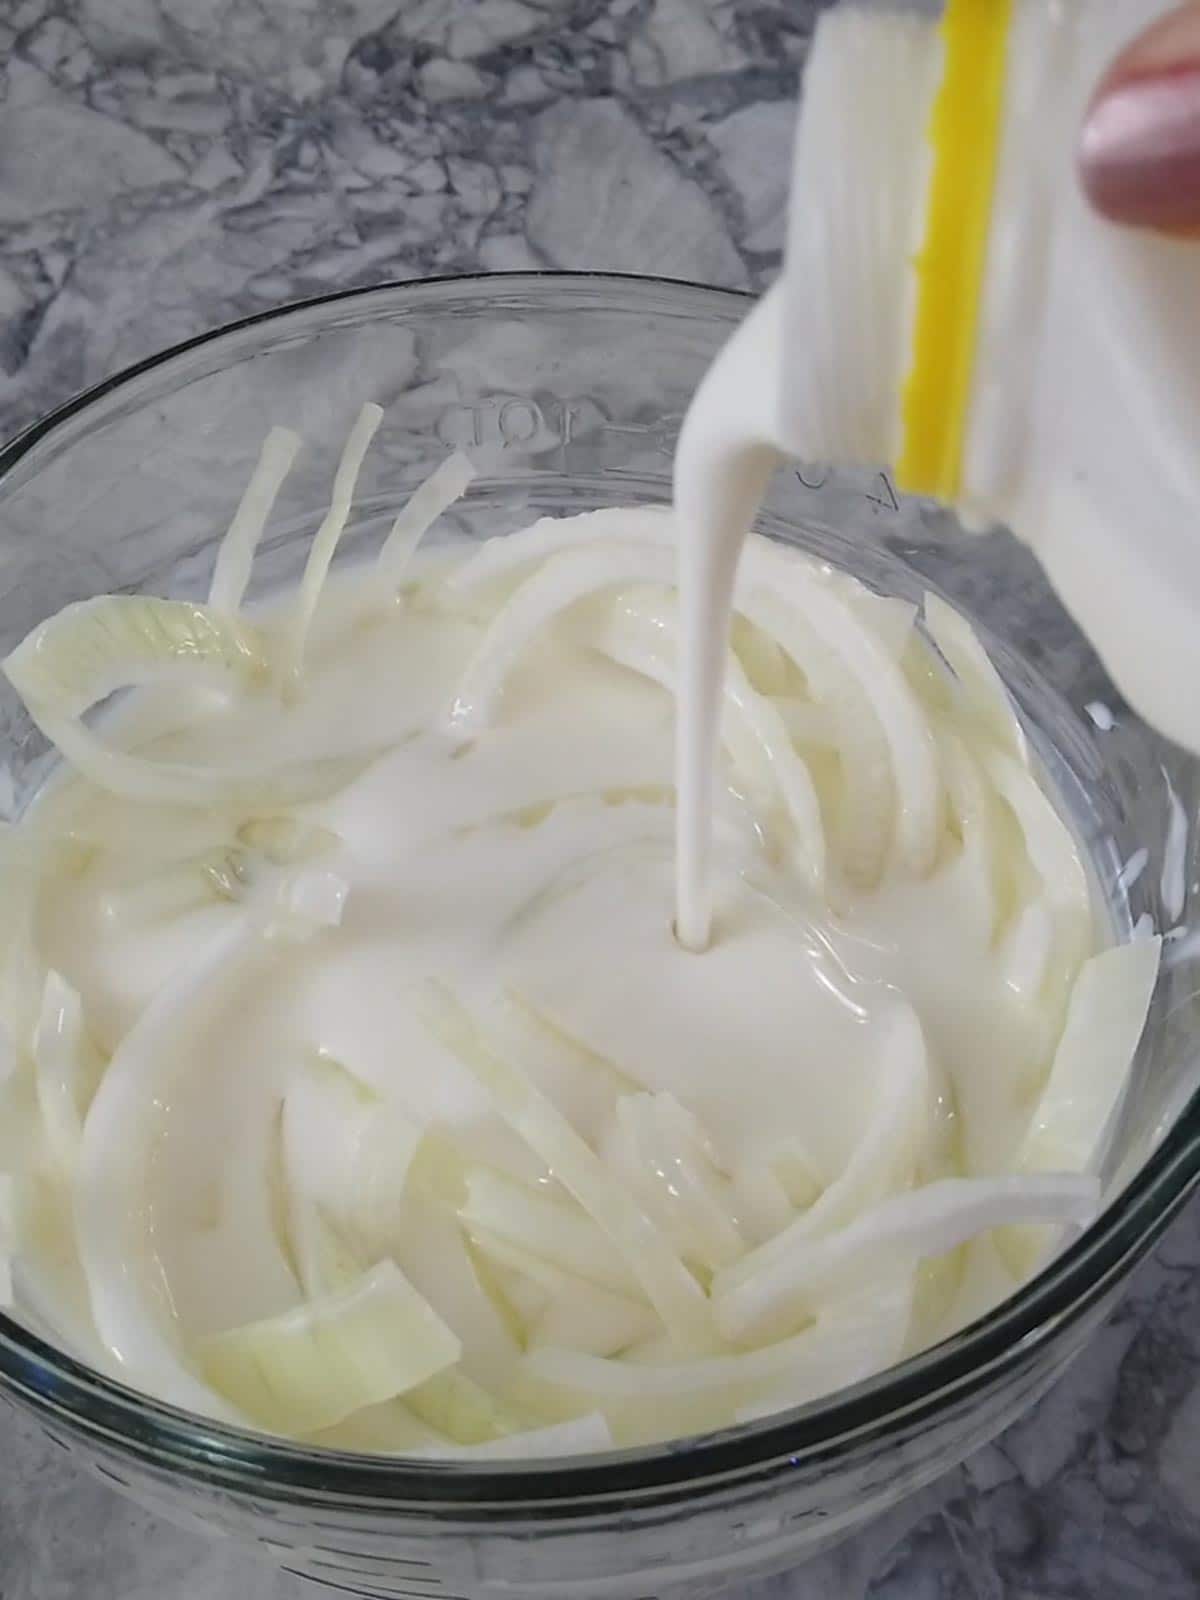 soaking onions in buttermilk